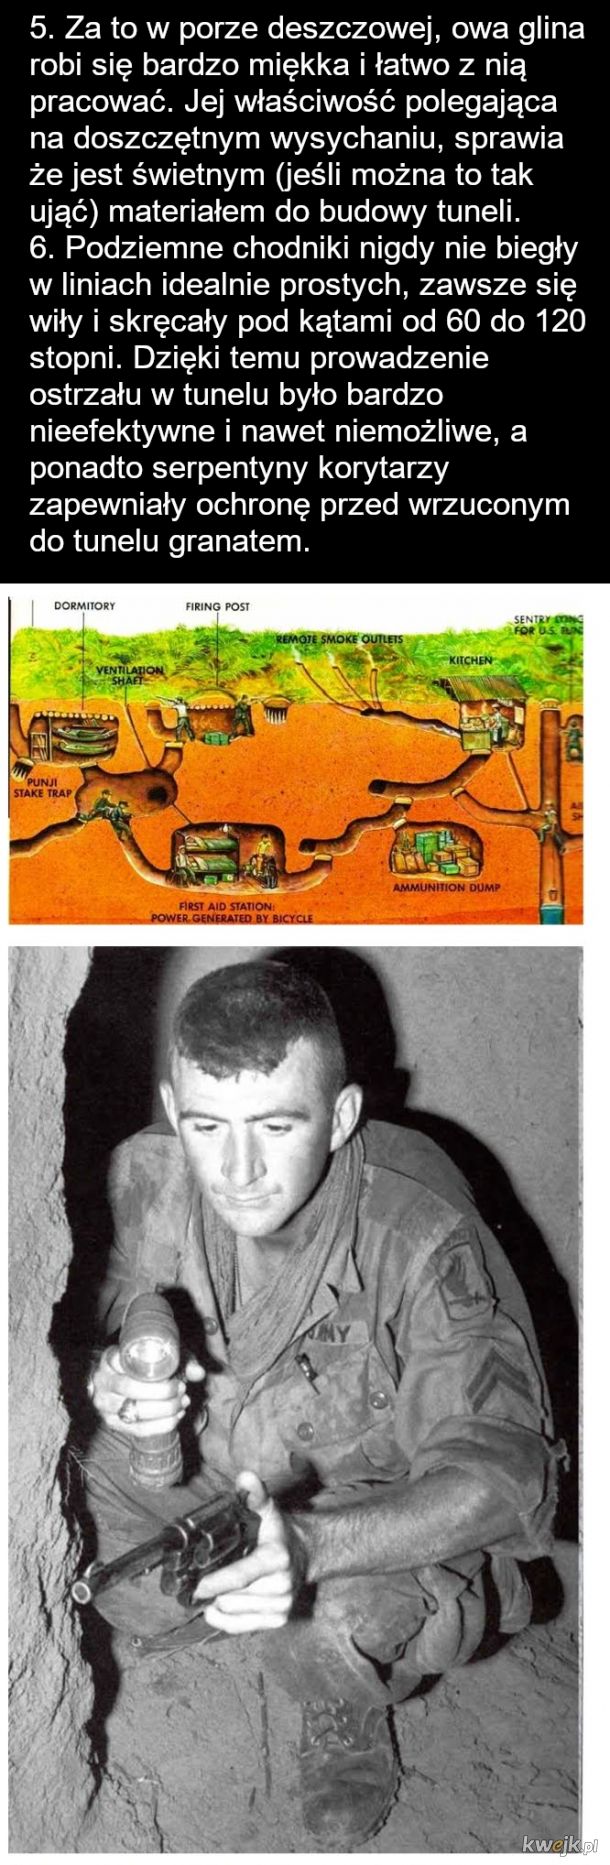 Amerykańscy żołnierze w Wietnamie - Szczury tunelowe, obrazek 5